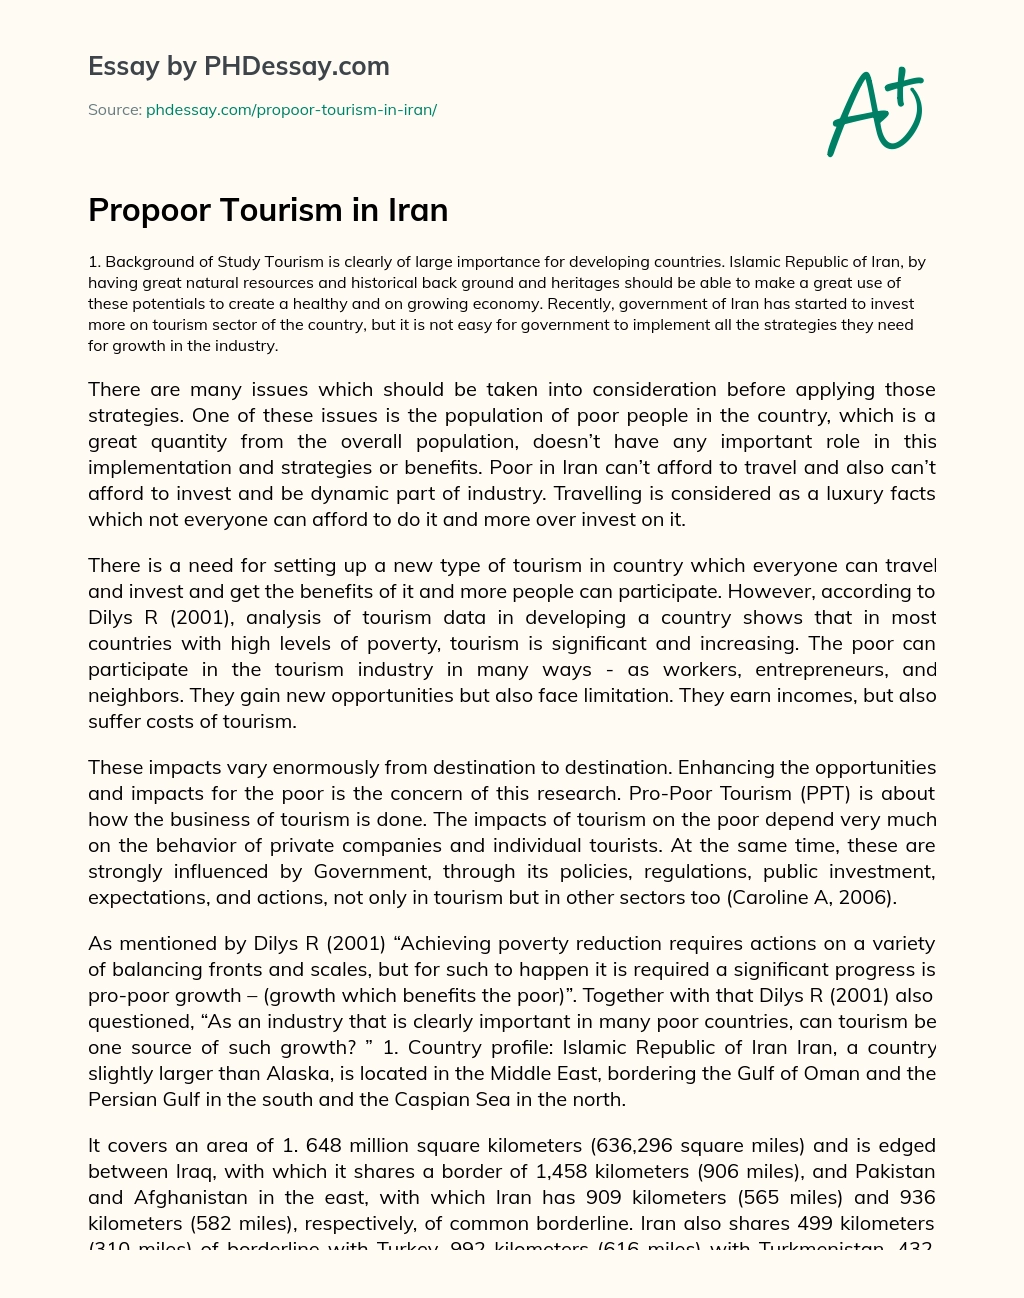 Propoor Tourism in Iran essay